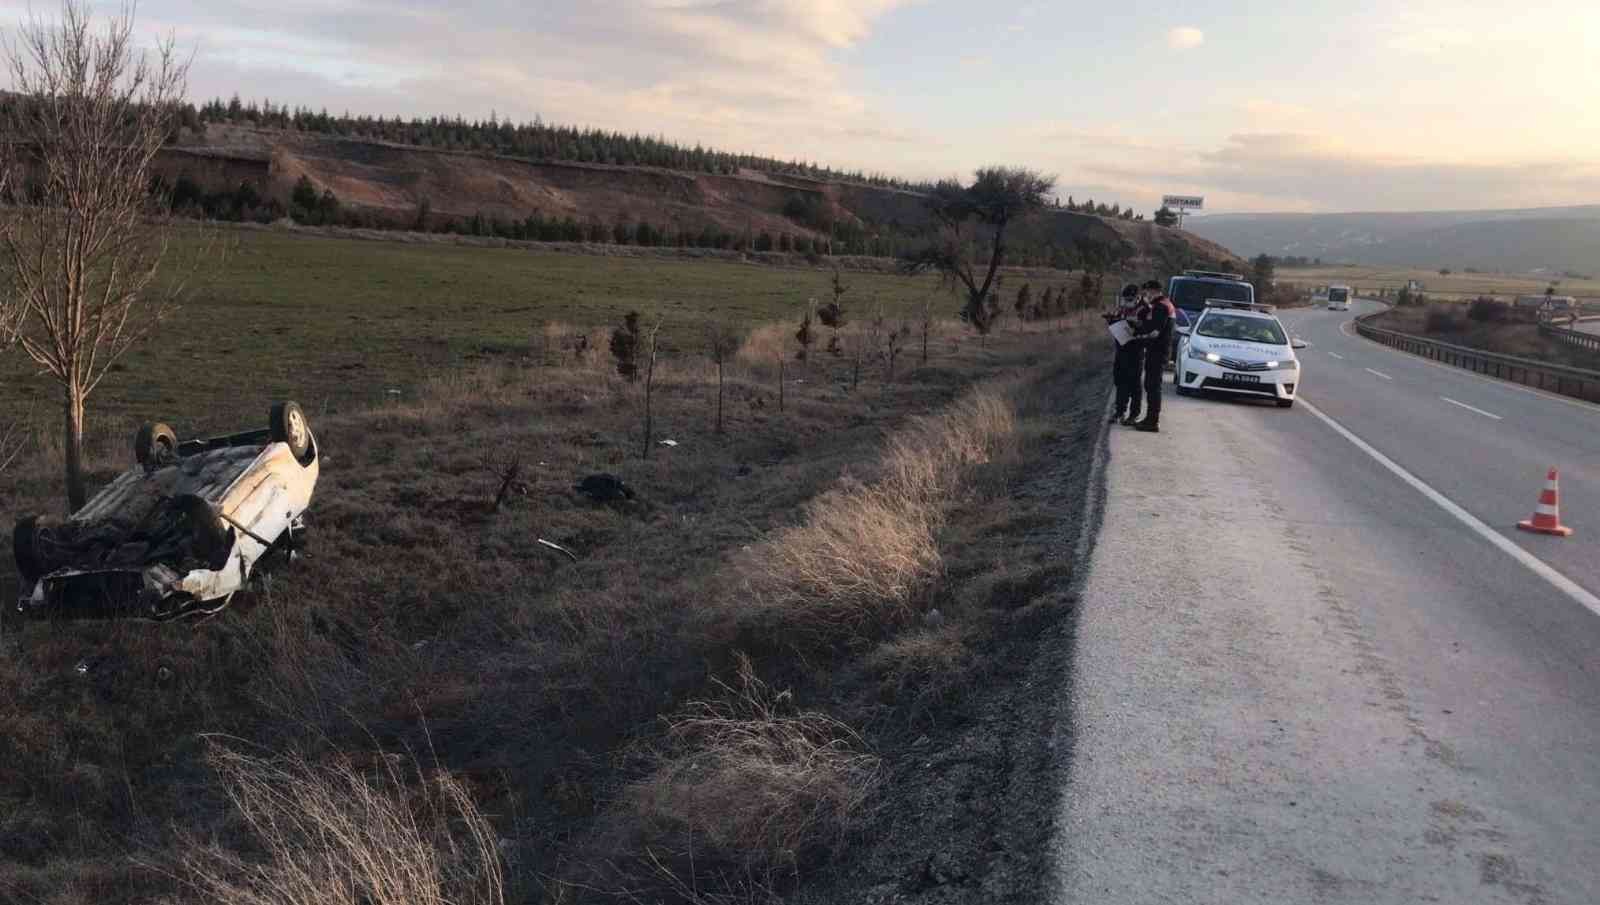 Eskişehir’de otomobil takla attı: 1 ölü, 1 yaralı #eskisehir